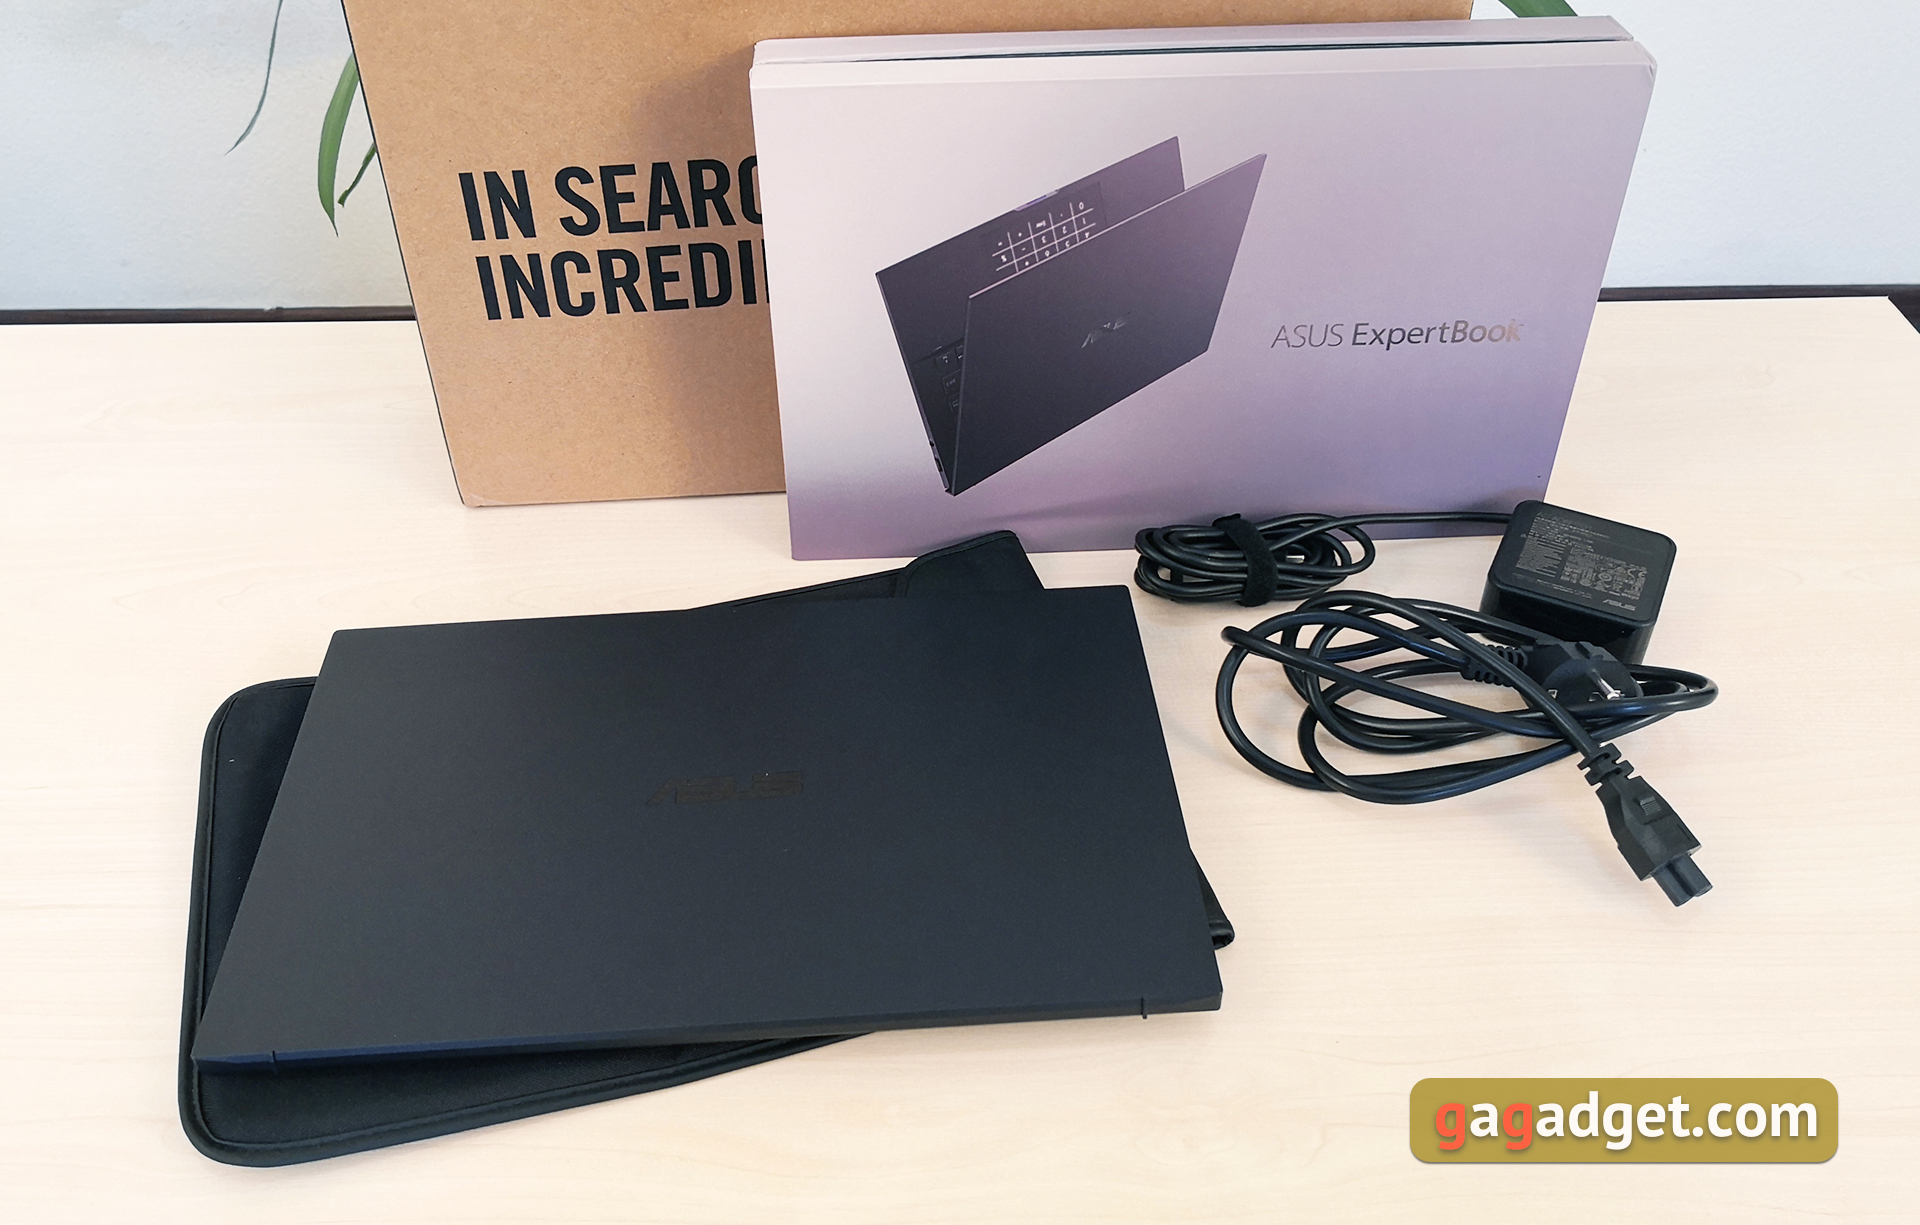 Recenzja ASUS ExpertBook B9450: ultralekki wymarzony notebook biznesowy o fantastycznej żywotności baterii-4